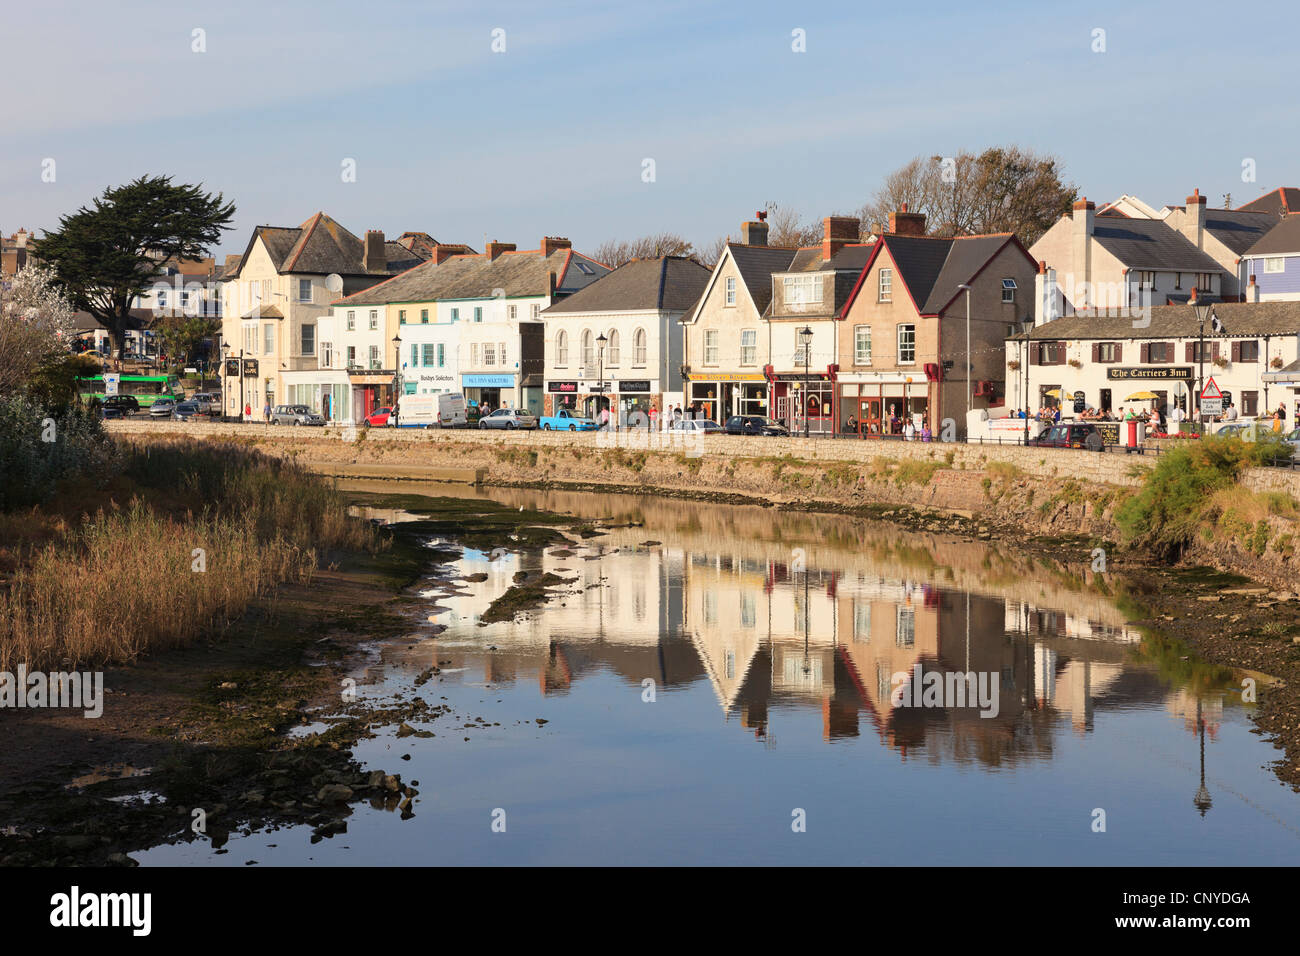 Afficher le long de la rivière Neet au Strand dans la ville balnéaire de Bude, Cornwall, England, UK, Grande-Bretagne Banque D'Images